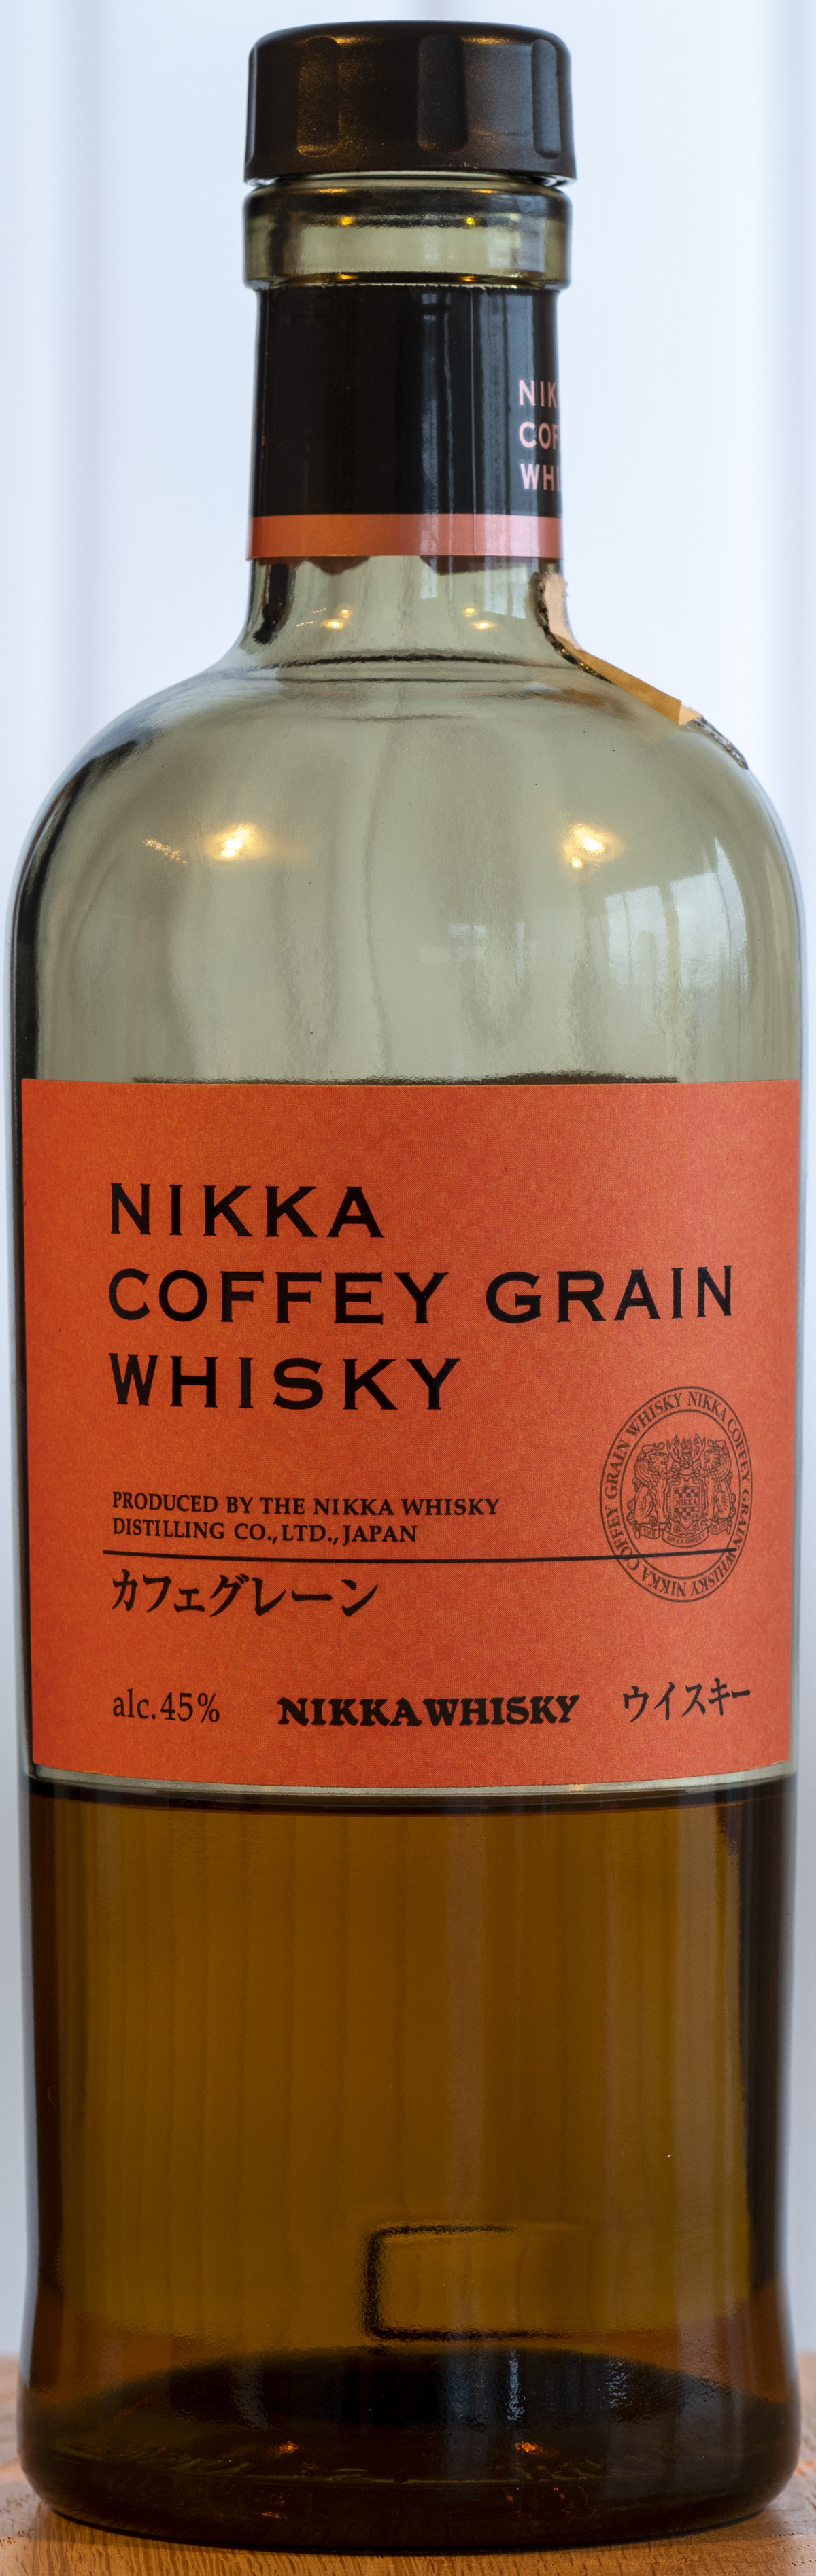 Billede: PHC_3951 - Nikka Coffey Grain Whisky - bottle front.jpg